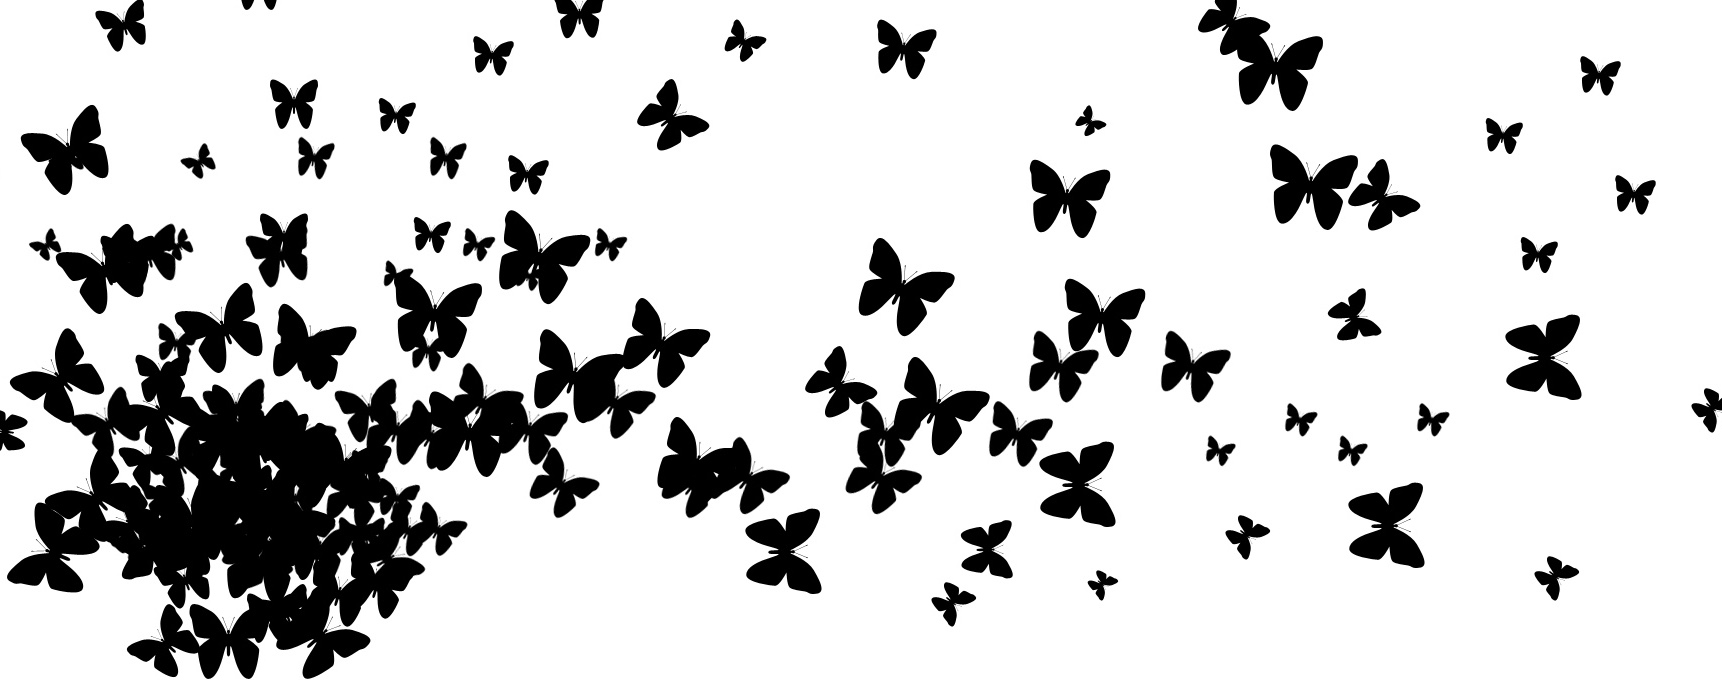 Бабочек легкая стая. Бабочки на белом фоне. Черные бабочки на белом фоне. Силуэт бабочки. Стая бабочек.